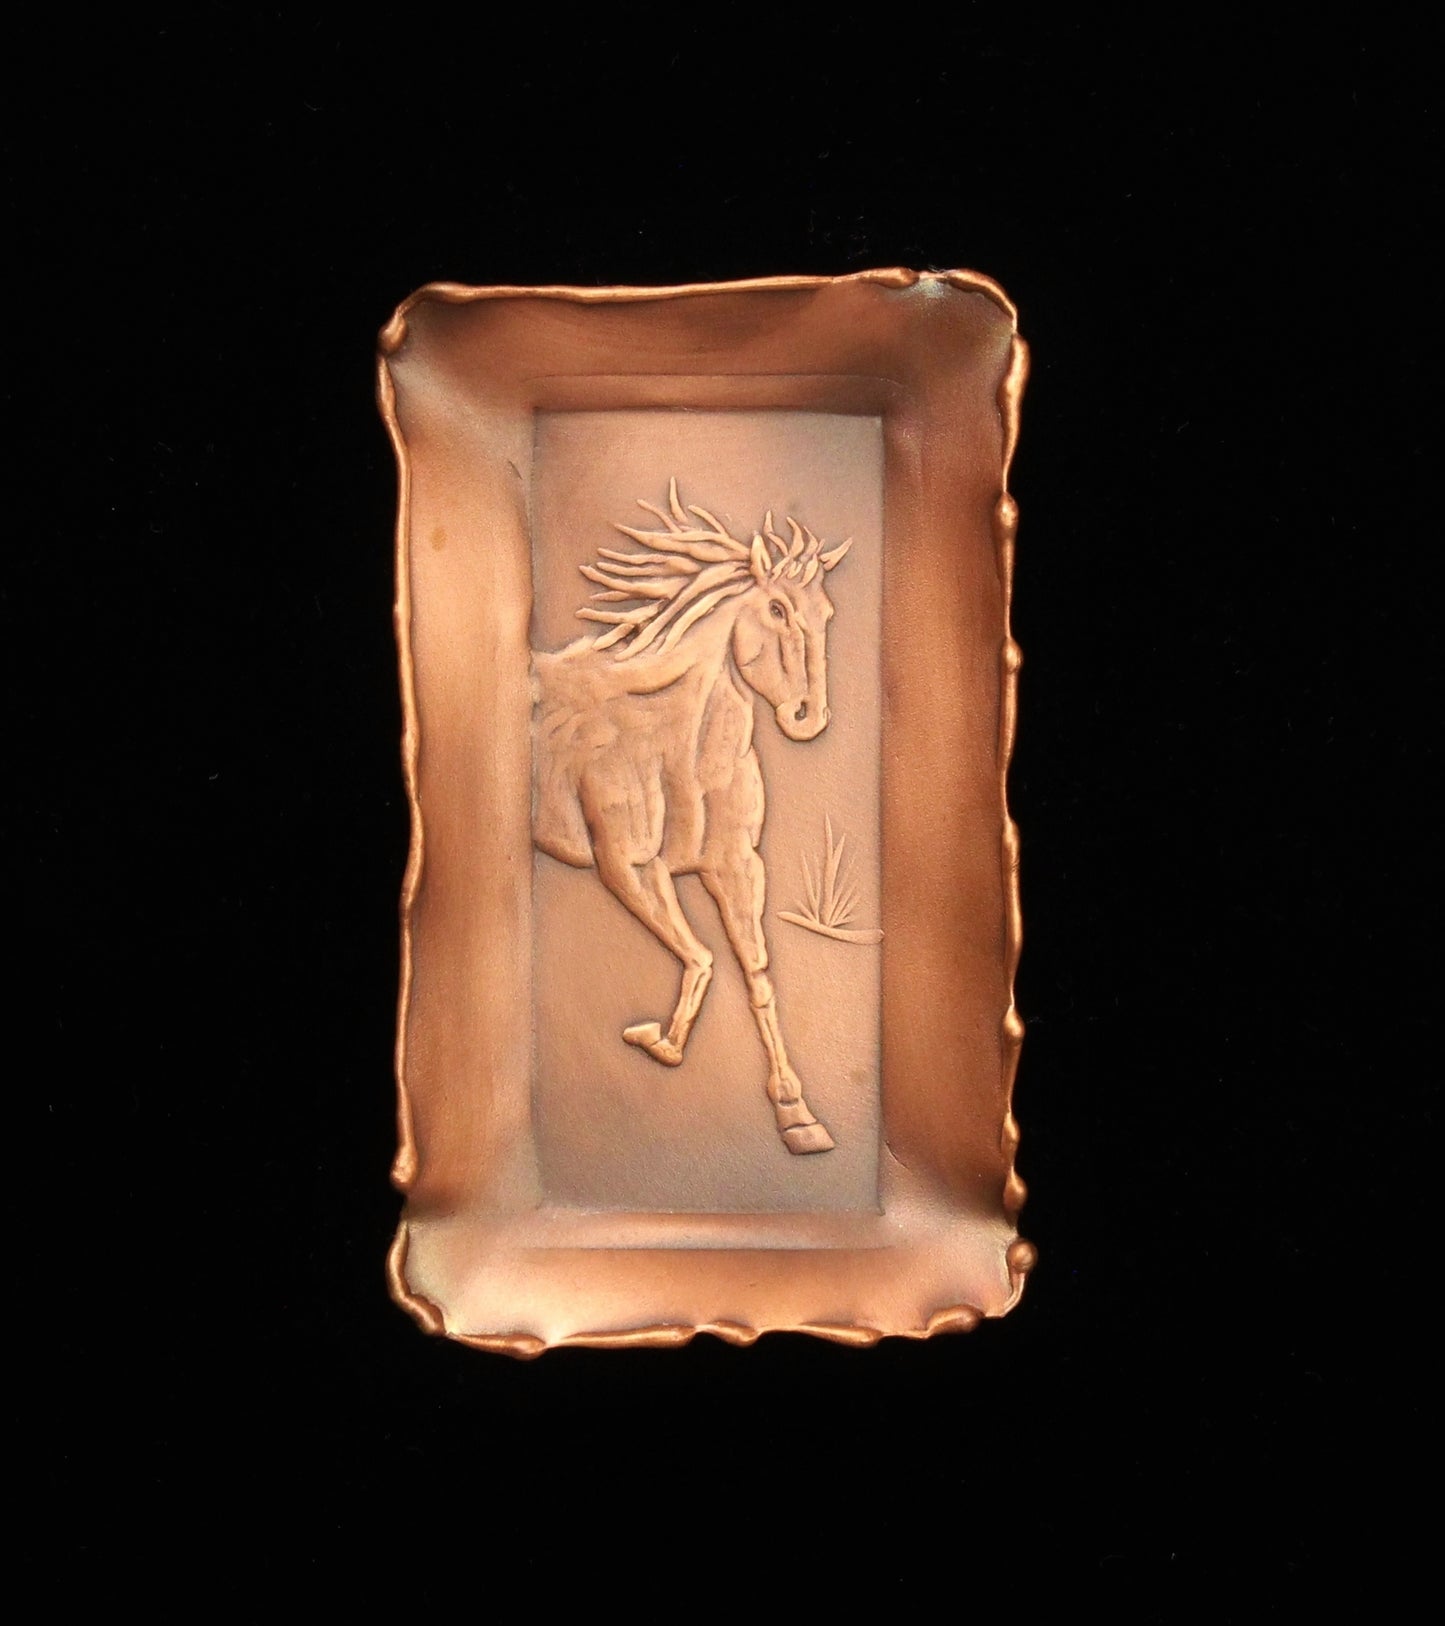 Horse Copper Mini Tray, 2" x 3.5", Facing Right